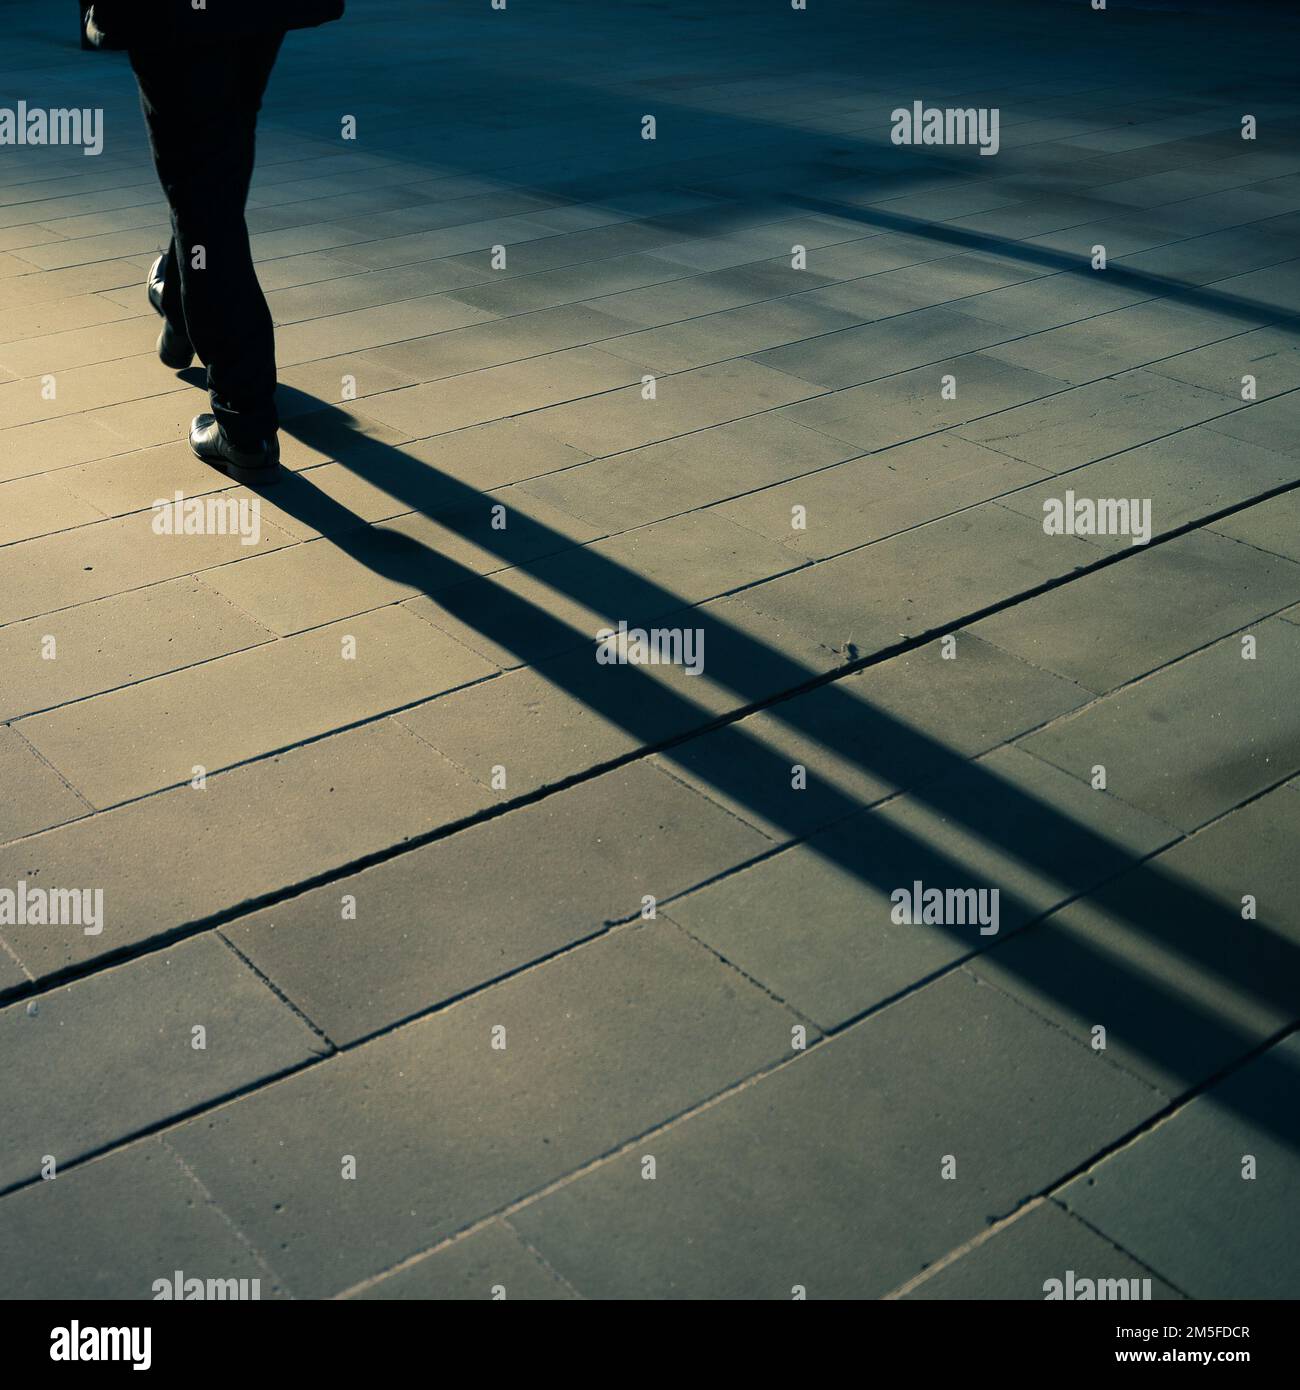 Longues ombres d'un homme marchant à Londres, tôt le matin. Teinte bleue. Banque D'Images